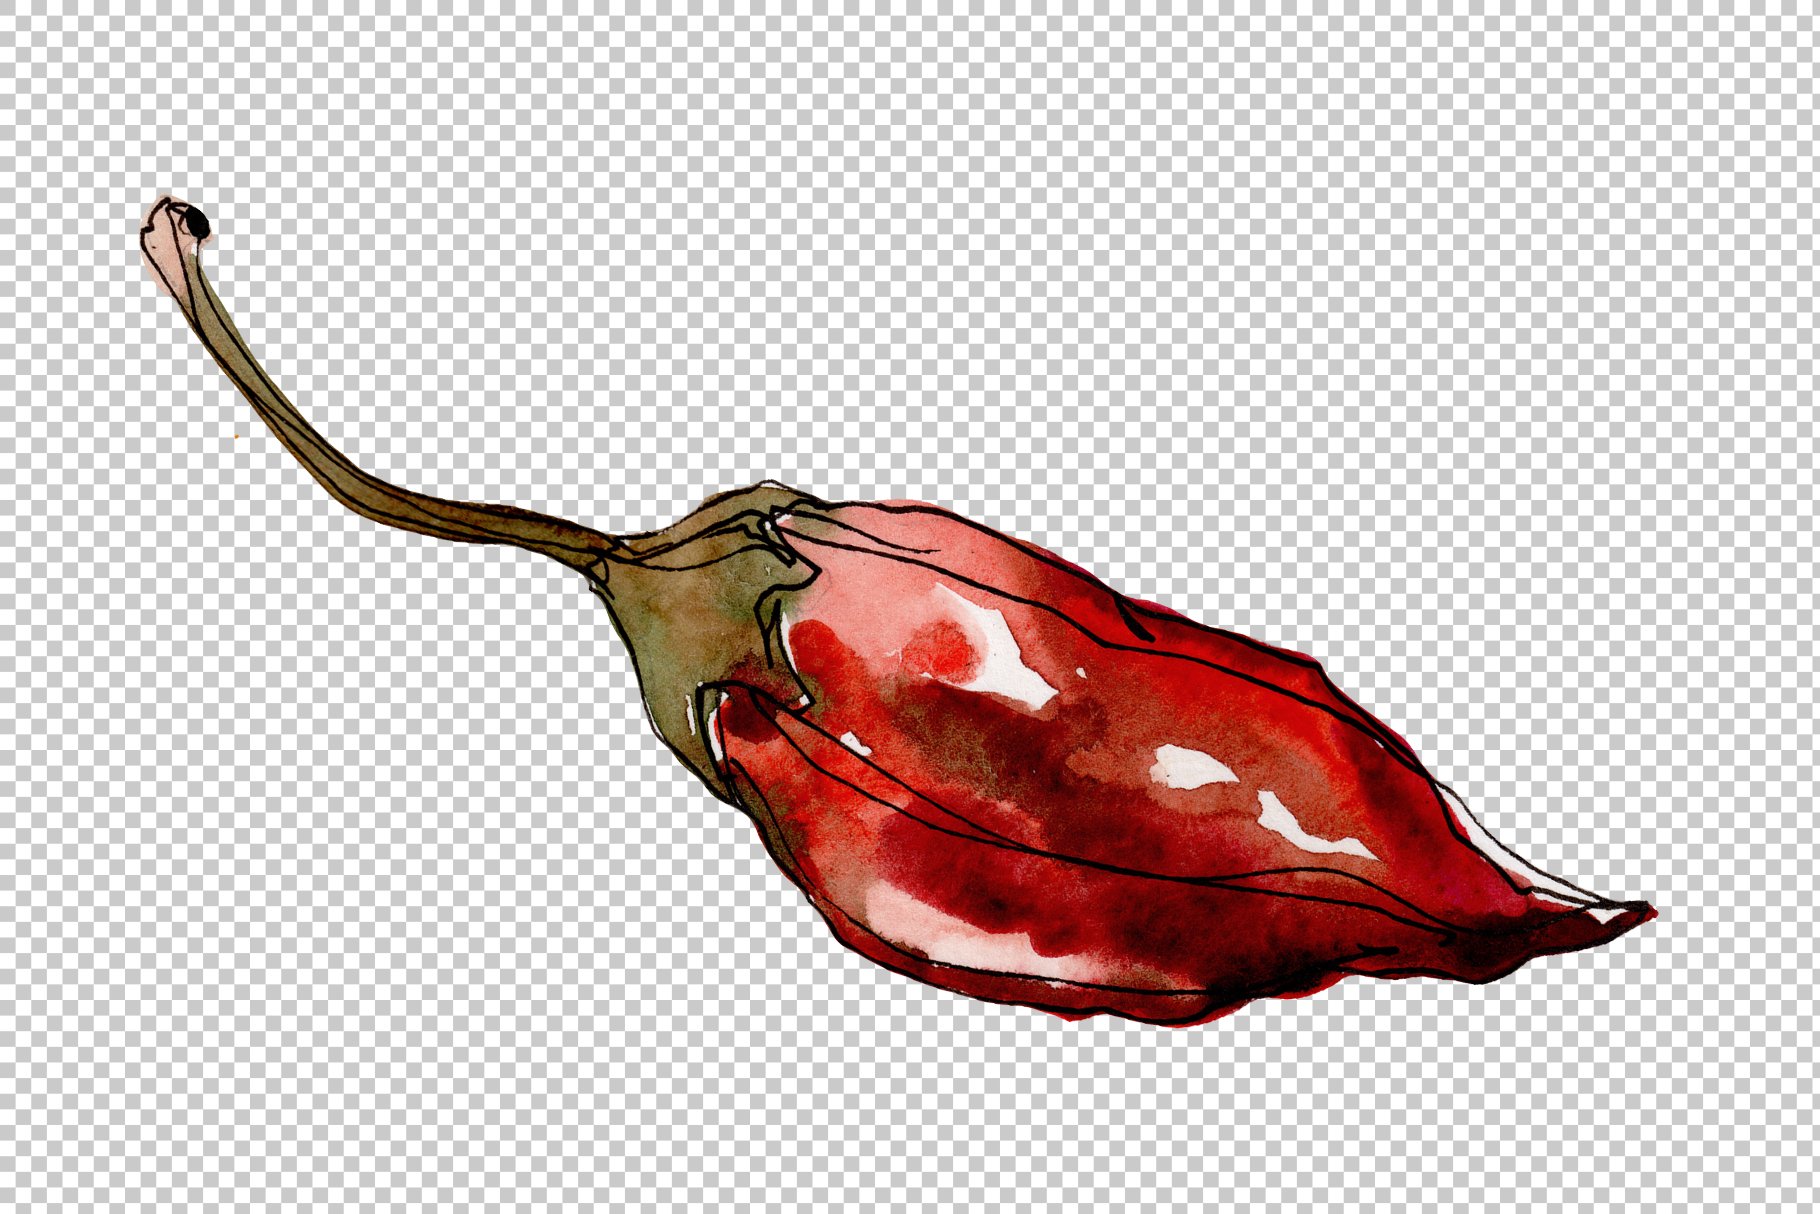 Interesting pepper shape.